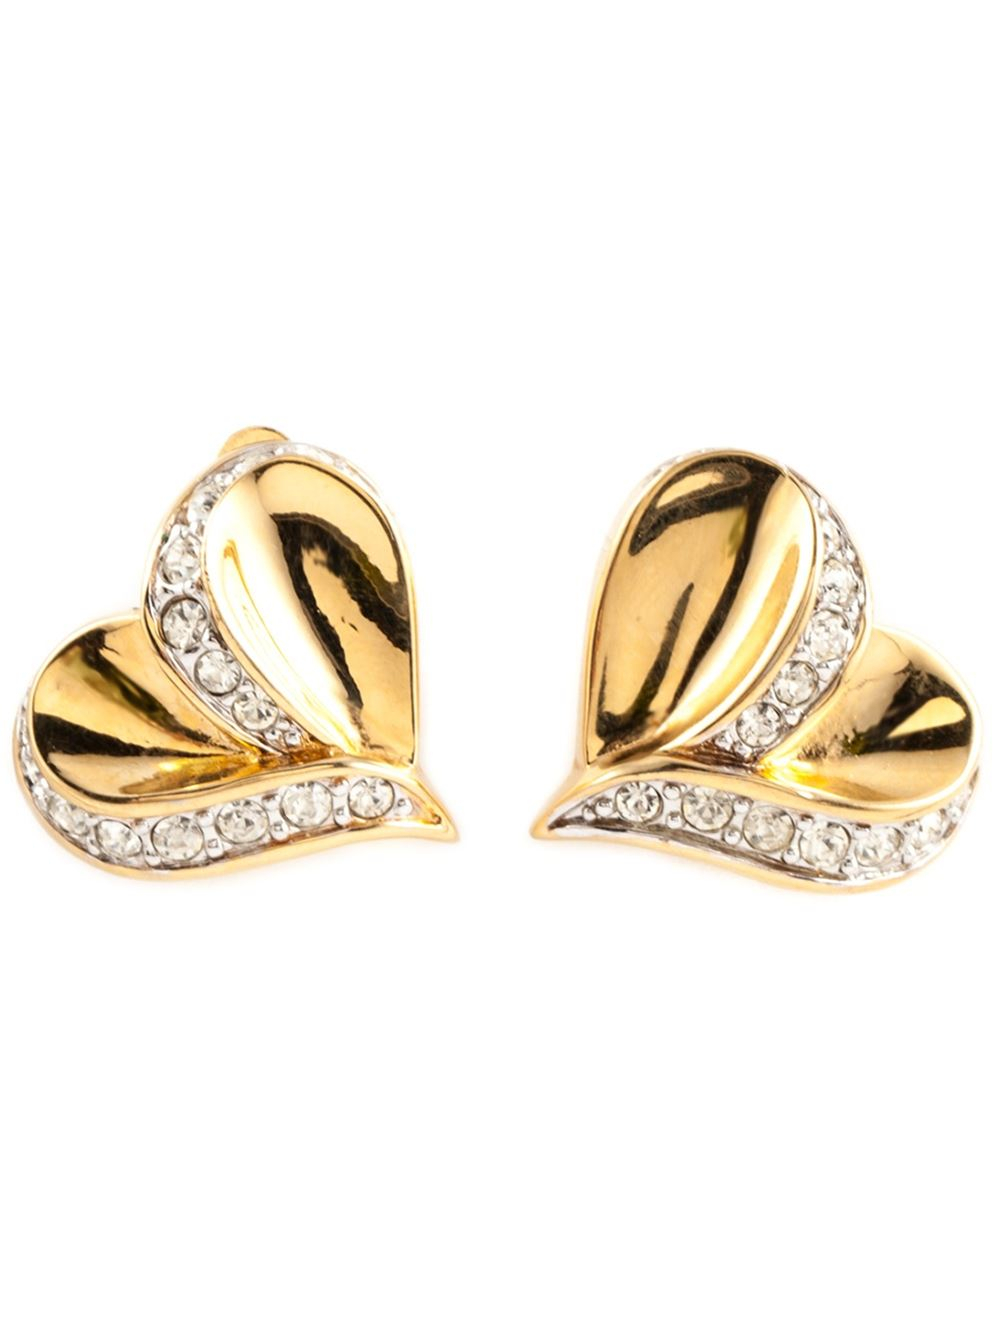 Lyst - Nina Ricci Heart Shaped Earrings in Metallic